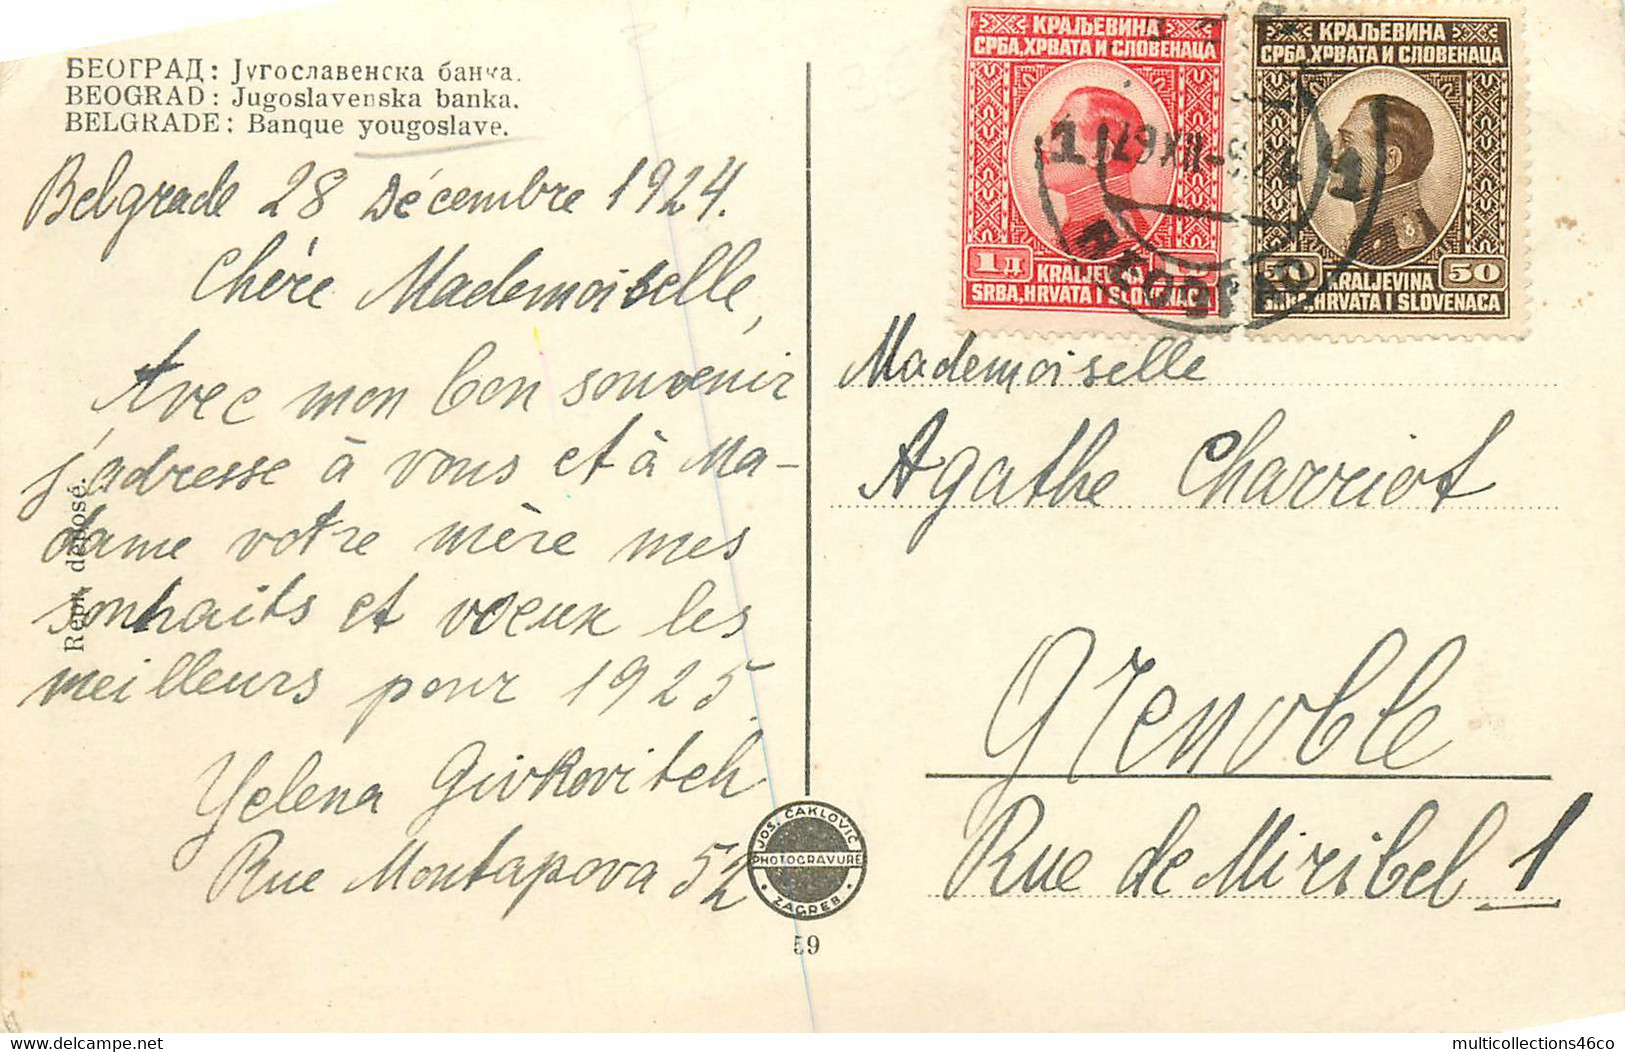 180223 - SERBIE TEORPAG - BELGRADE Banque Yougoslave - 1924 - Serbie